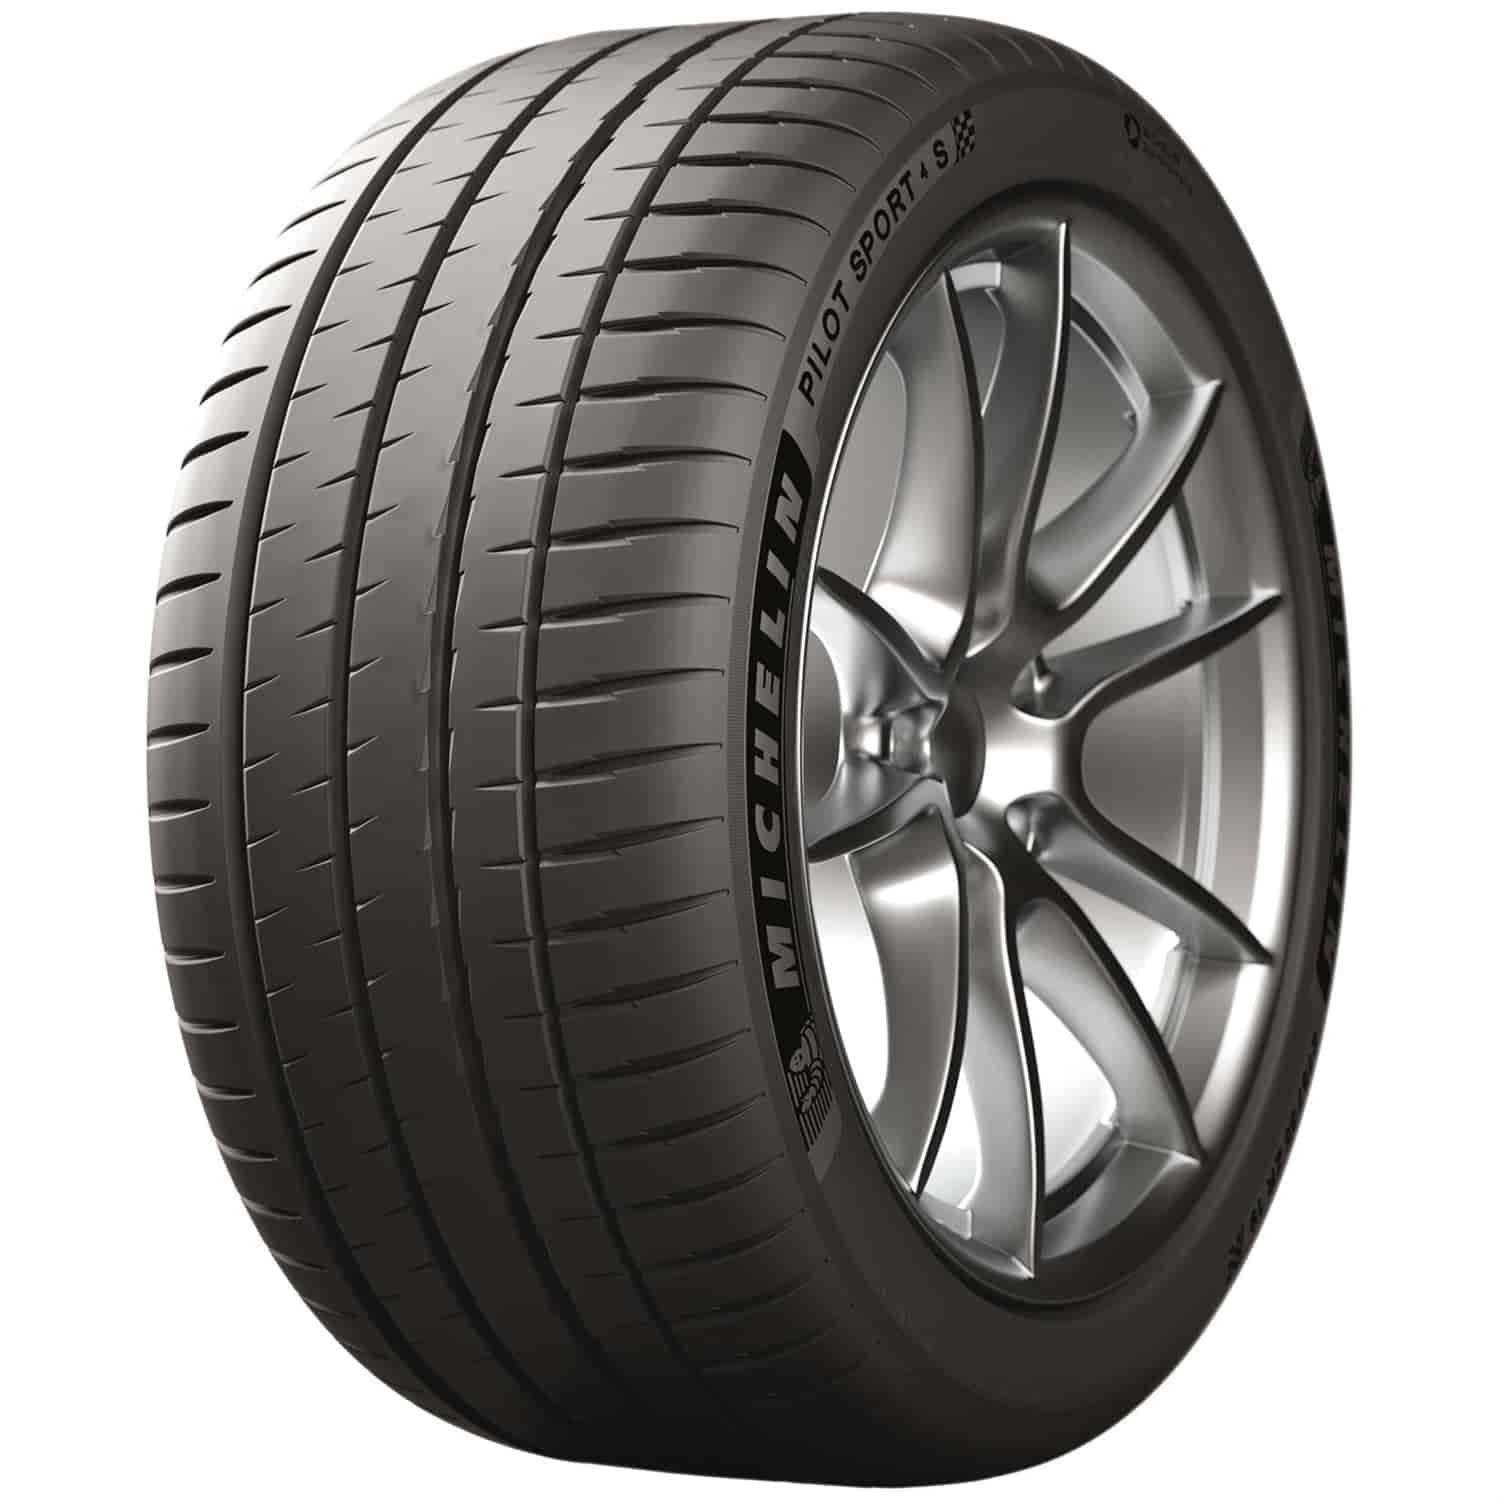 Pilot Sport 4S Ultra-High Performance Summer Radial Tire 245/35ZR18